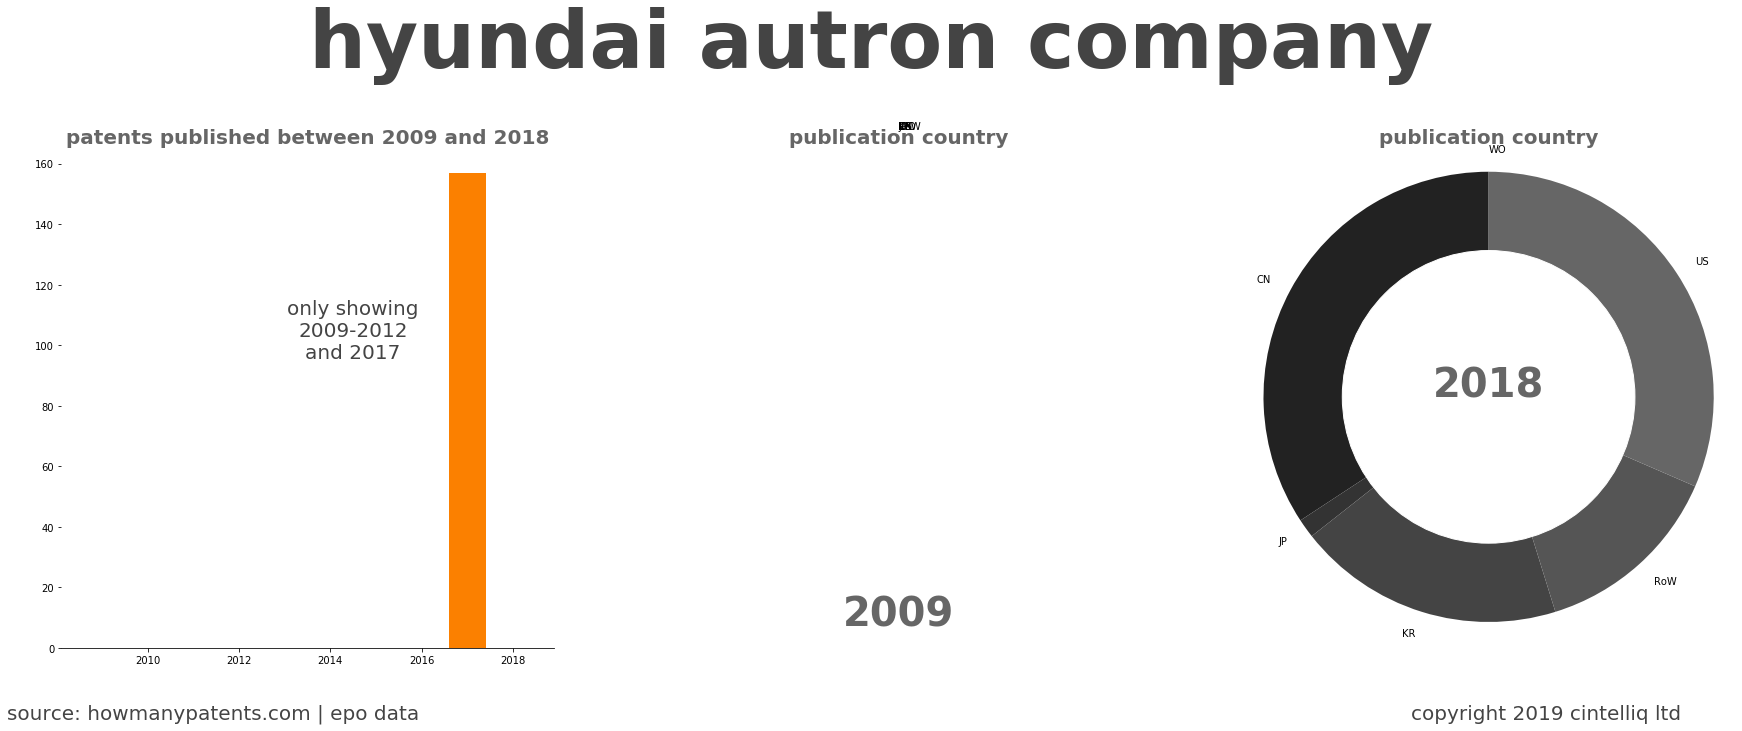 summary of patents for Hyundai Autron Company